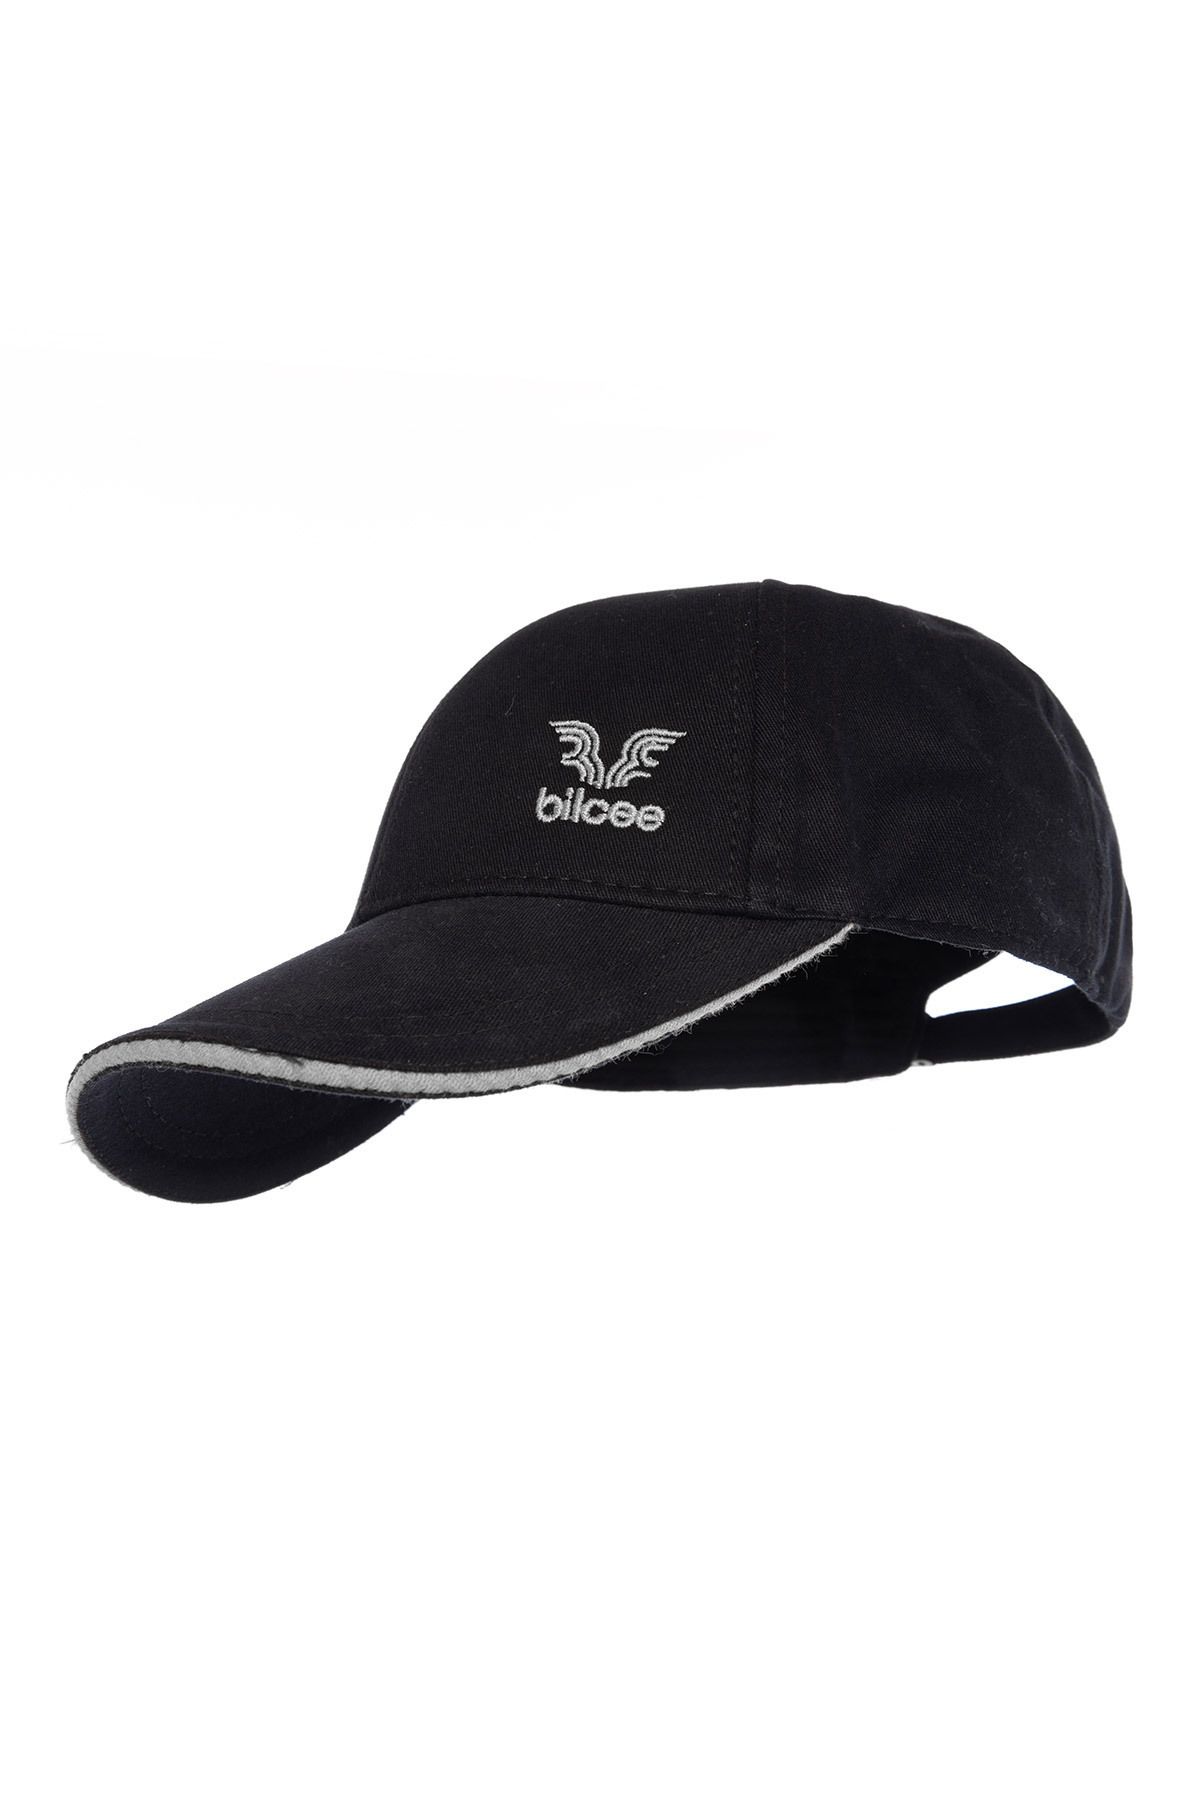 bilcee Unisex Gri Şeritli Şapka 1590